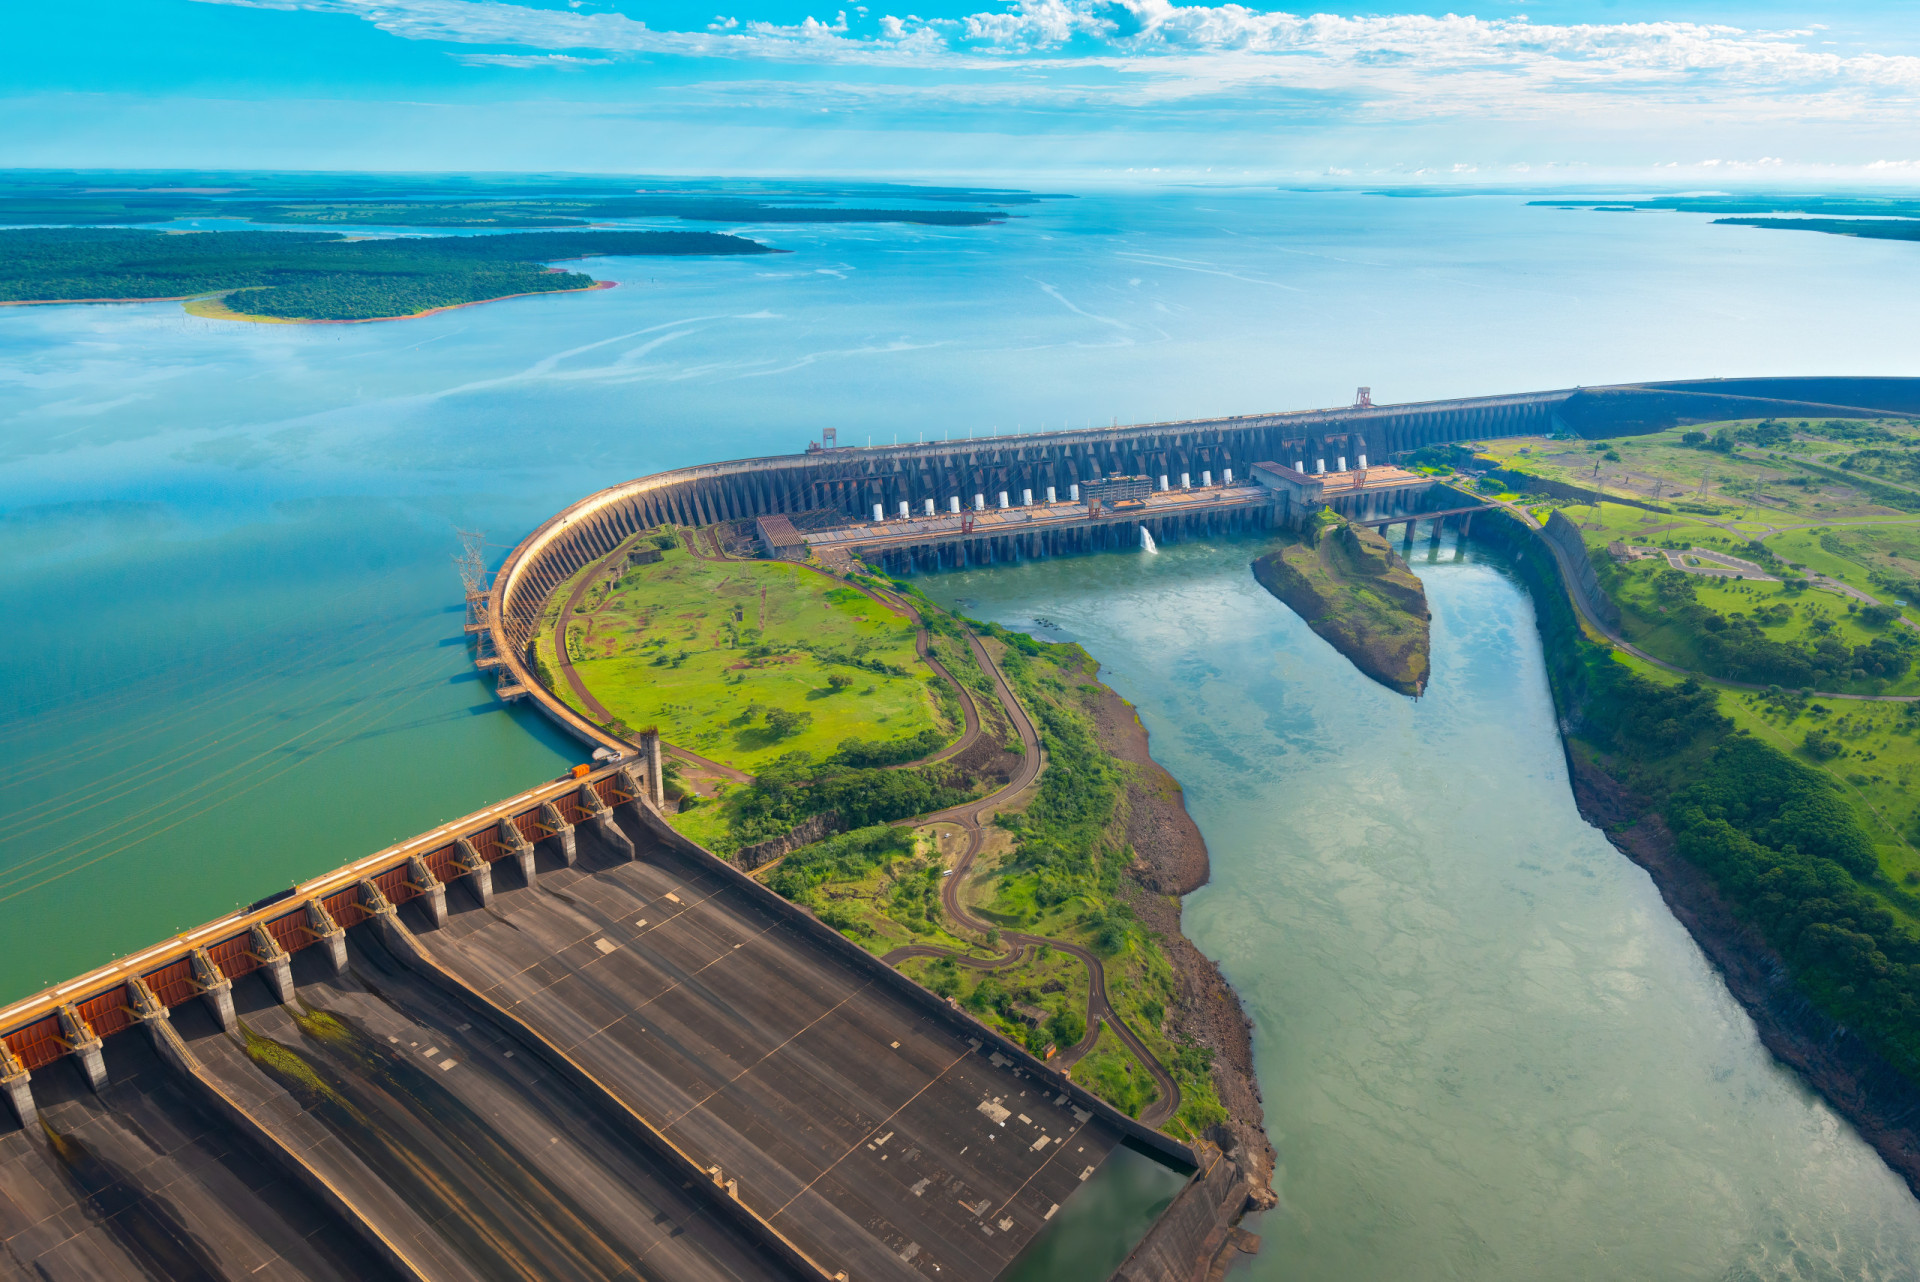 <p>Le barrage hydroélectrique d'Itaipu est le projet gouvernemental le plus coûteux du pays à ce jour. Il a été achevé en 1982 et a coûté 19,6 milliards de dollars à l'époque, soit l'équivalent de 56,7 milliards de dollars aujourd'hui, ou 52 milliards d'euros.</p><p><a href="https://www.msn.com/fr-fr/community/channel/vid-7xx8mnucu55yw63we9va2gwr7uihbxwc68fxqp25x6tg4ftibpra?cvid=94631541bc0f4f89bfd59158d696ad7e">Suivez-nous et accédez tous les jours à du contenu exclusif</a></p>